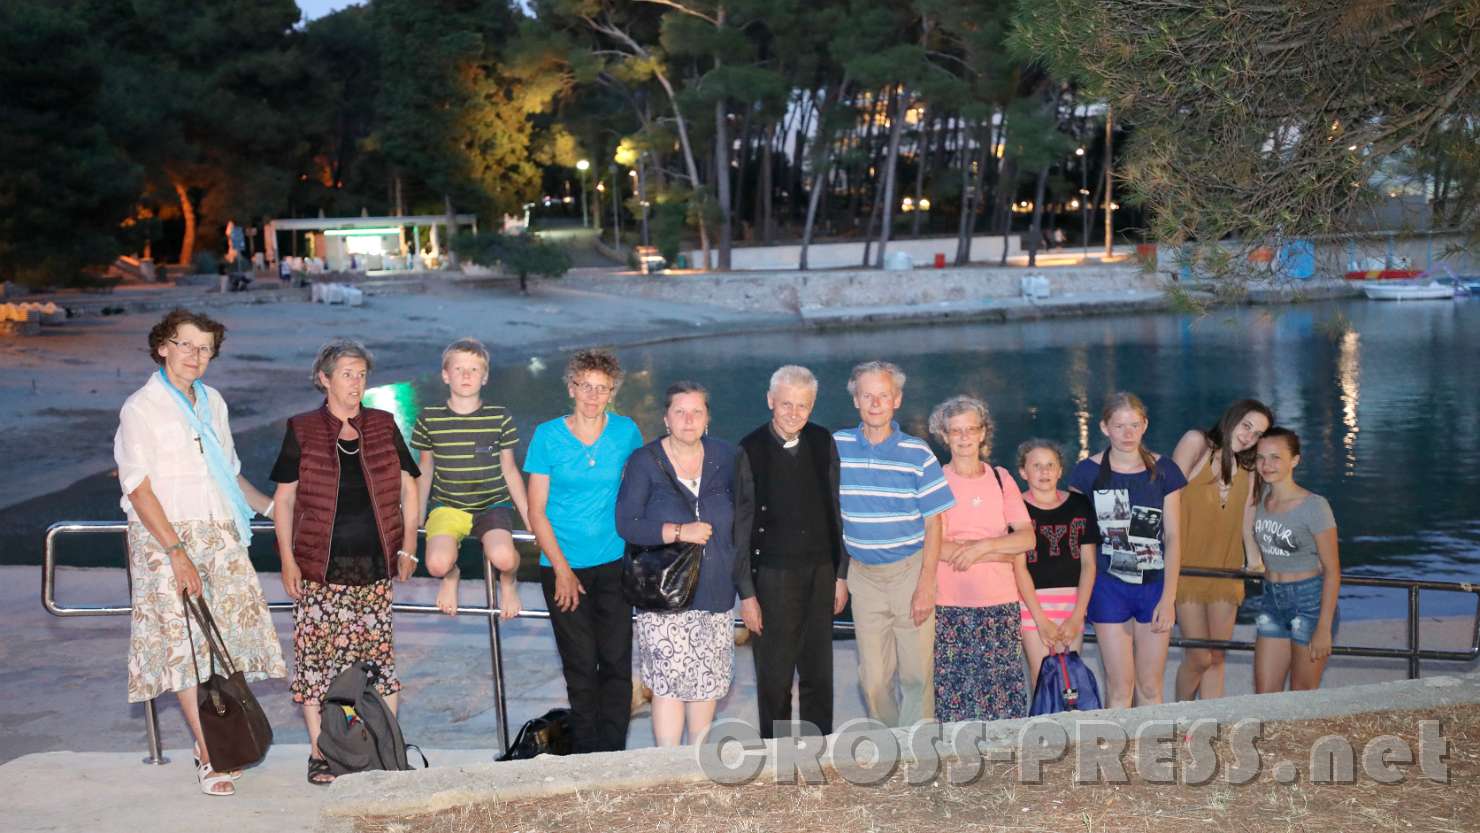 2017.06.17_21.22.49.jpg - Gruppenfoto in Mali Lošinj, Bucht von Čikat.